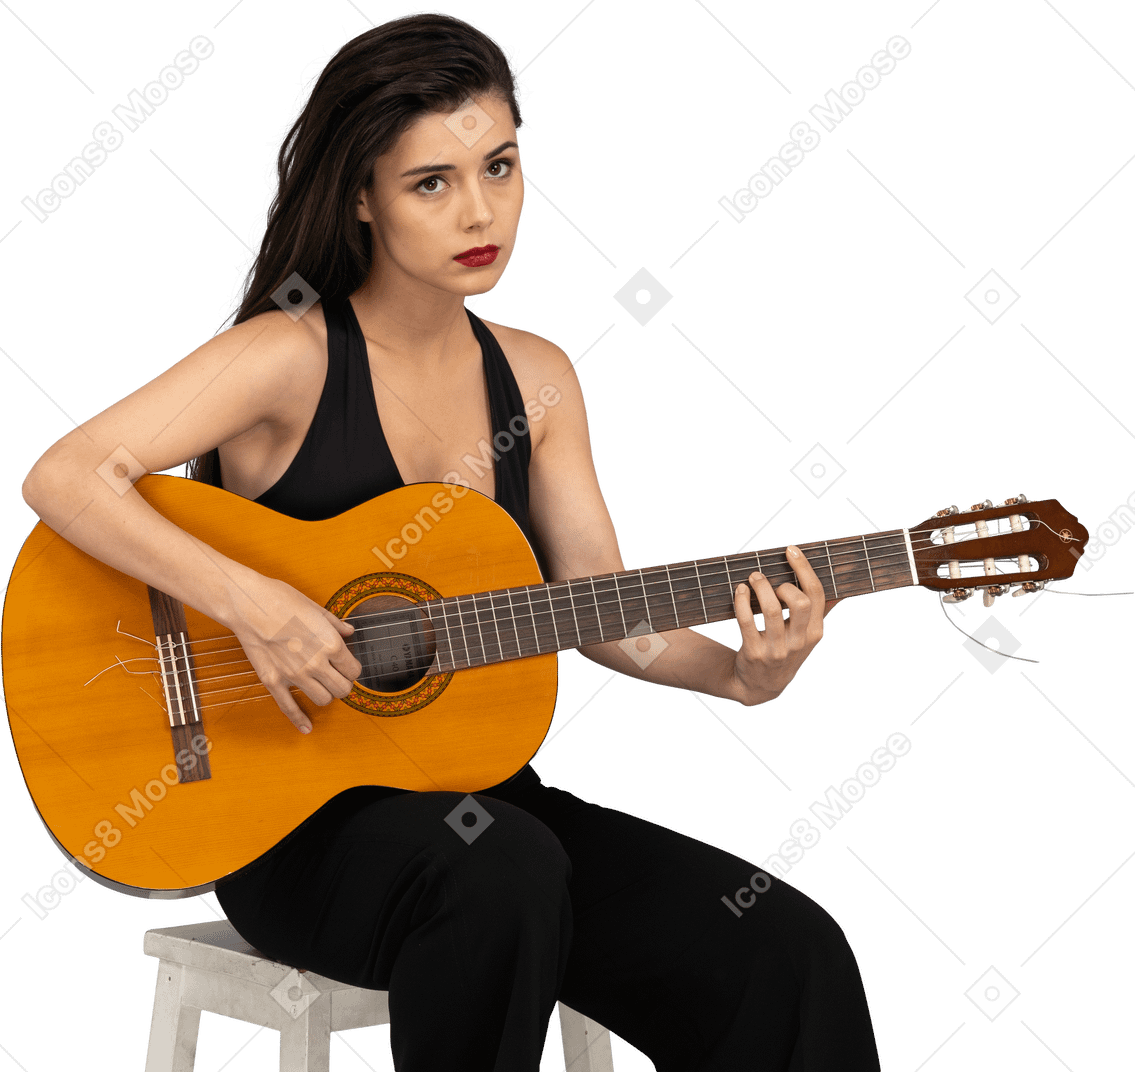 Vue de face d'une jeune femme assise en costume noir à jouer de la guitare